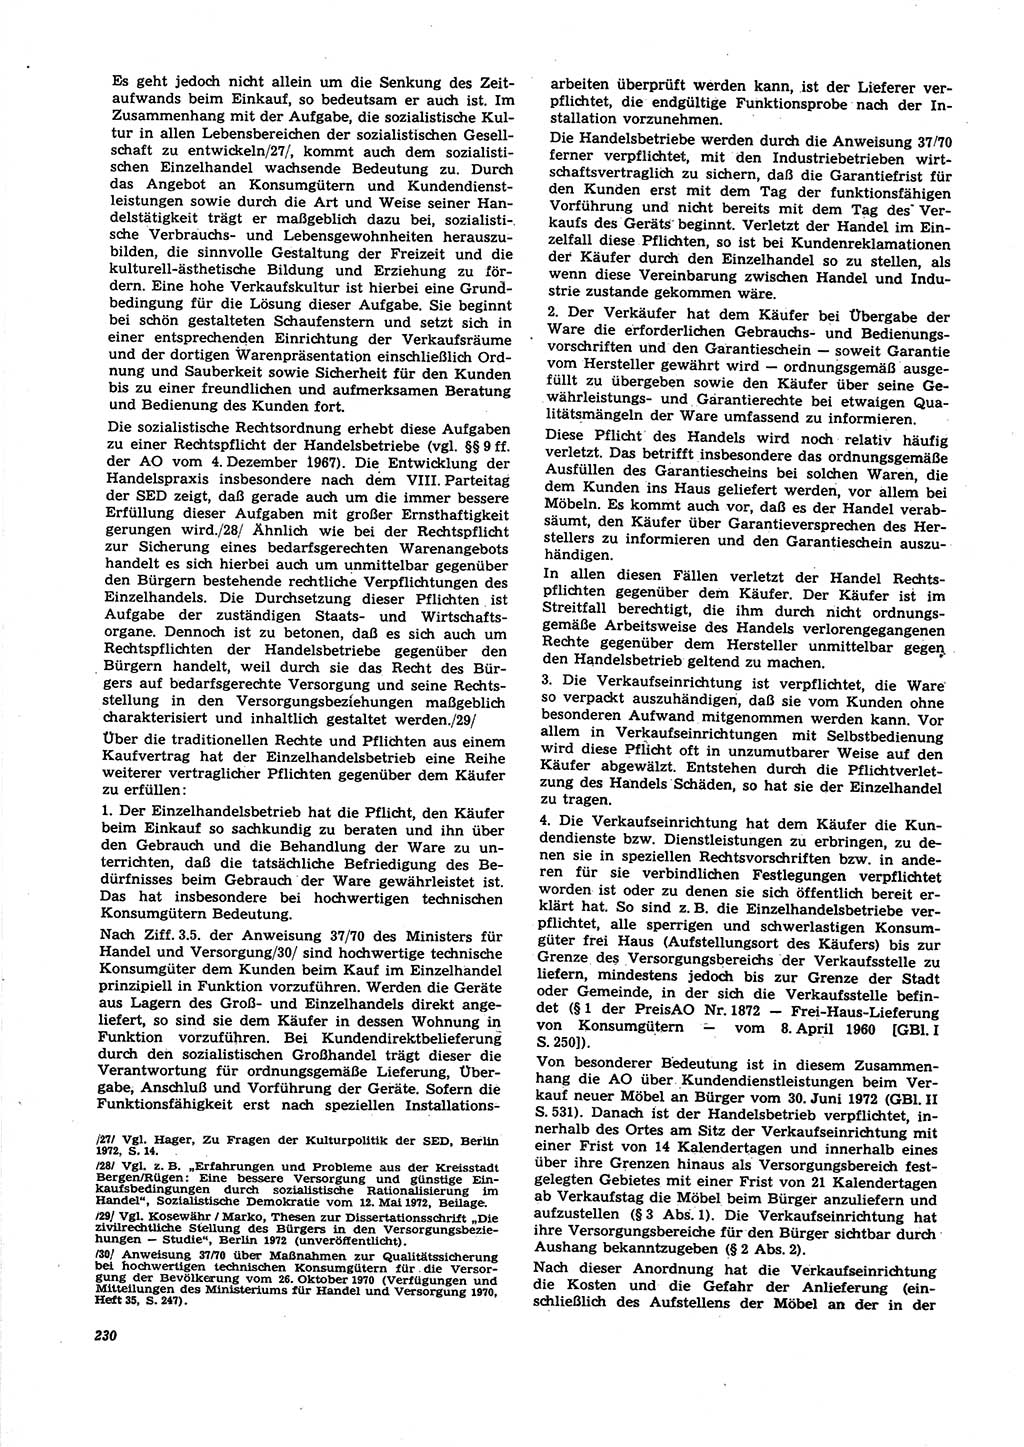 Neue Justiz (NJ), Zeitschrift für Recht und Rechtswissenschaft [Deutsche Demokratische Republik (DDR)], 27. Jahrgang 1973, Seite 230 (NJ DDR 1973, S. 230)